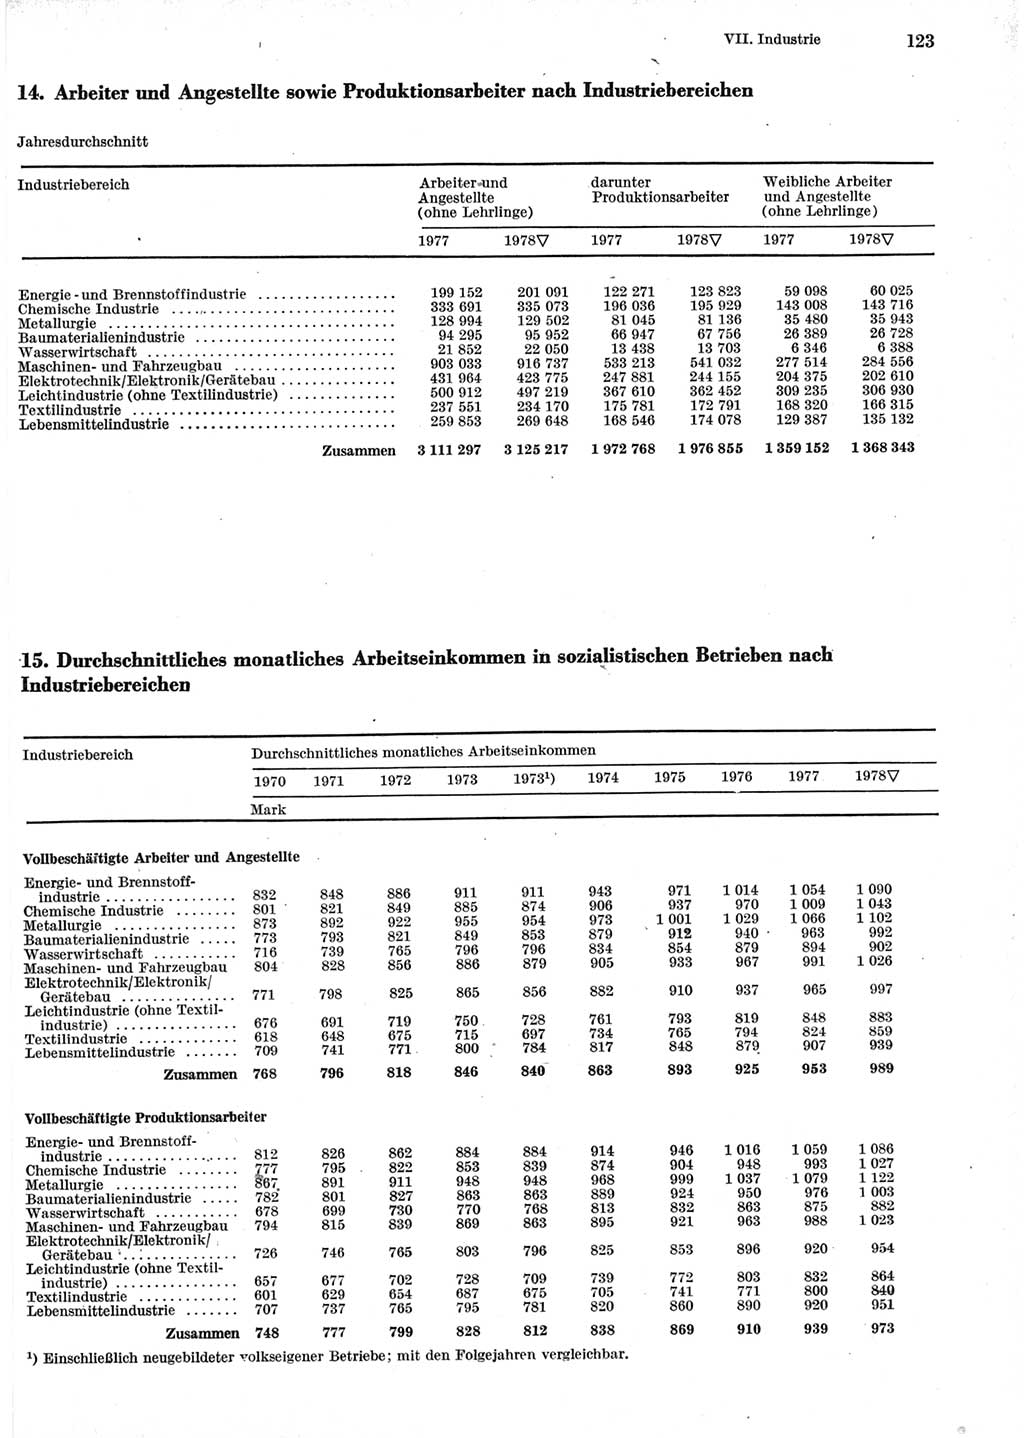 Statistisches Jahrbuch der Deutschen Demokratischen Republik (DDR) 1979, Seite 123 (Stat. Jb. DDR 1979, S. 123)